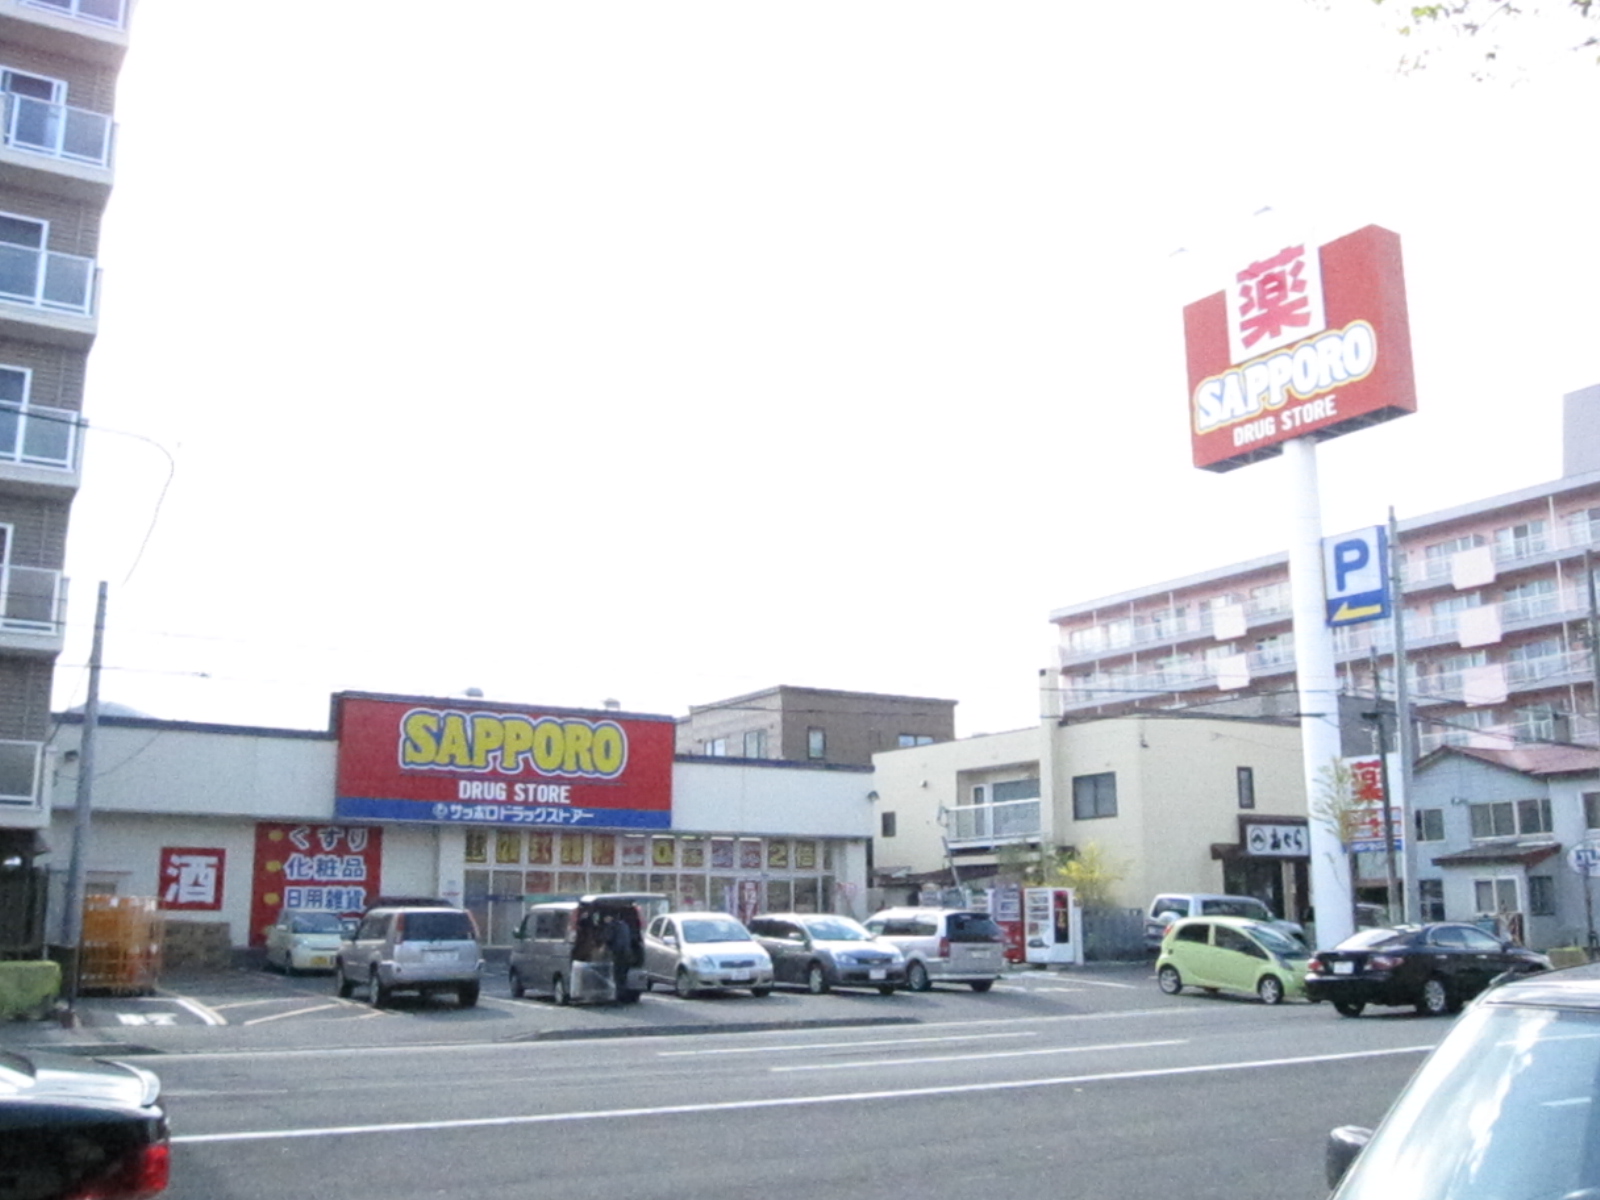 Dorakkusutoa. Sapporo drugstores Kitaen Yamaten 656m to (drugstore)